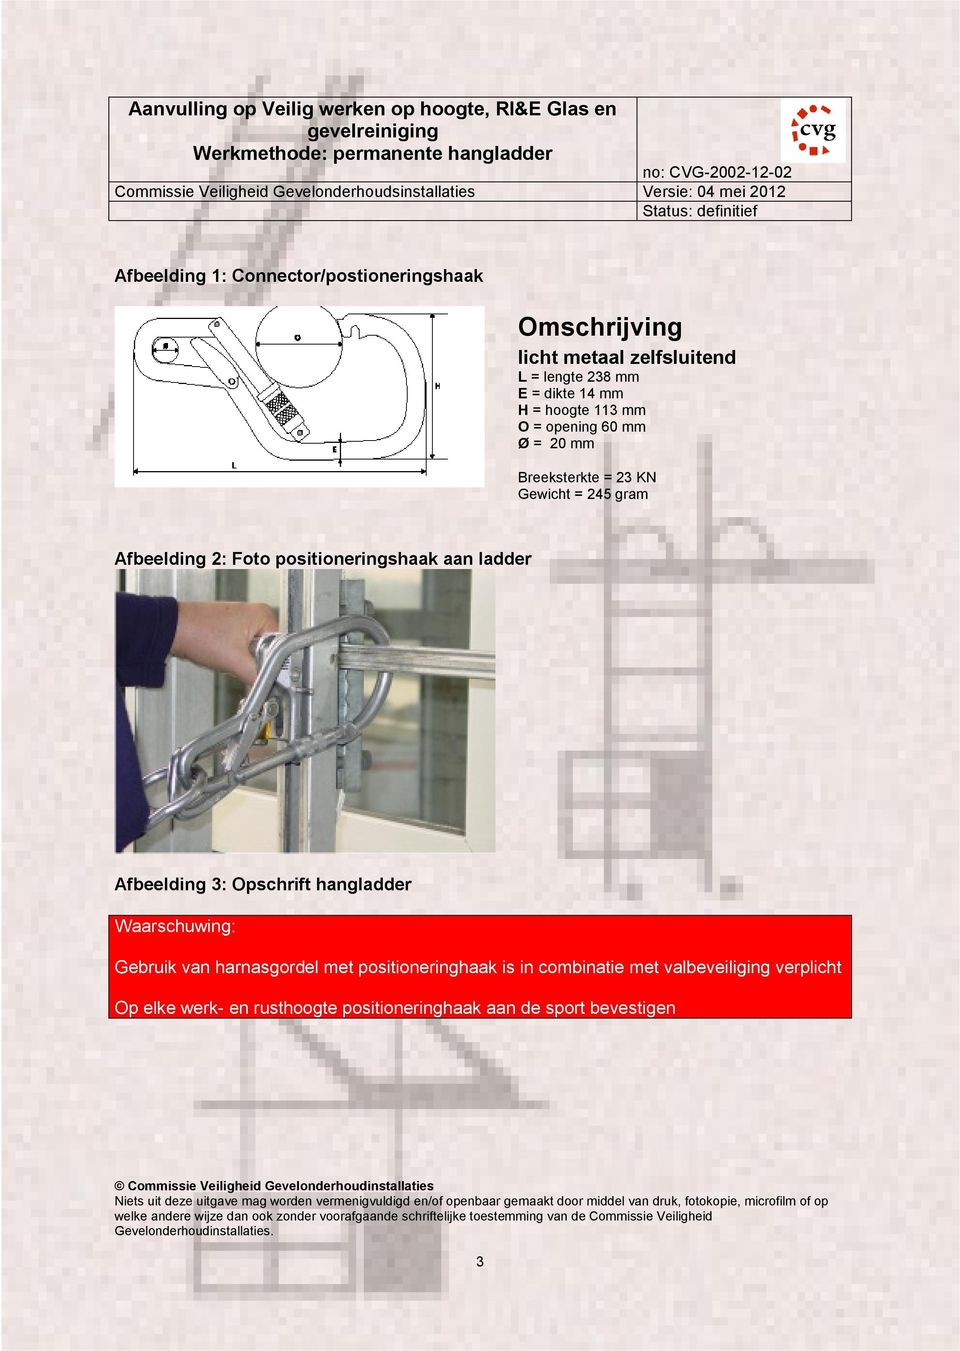 positioneringshaak aan ladder Afbeelding 3: Opschrift hangladder Waarschuwing: Gebruik van harnasgordel met